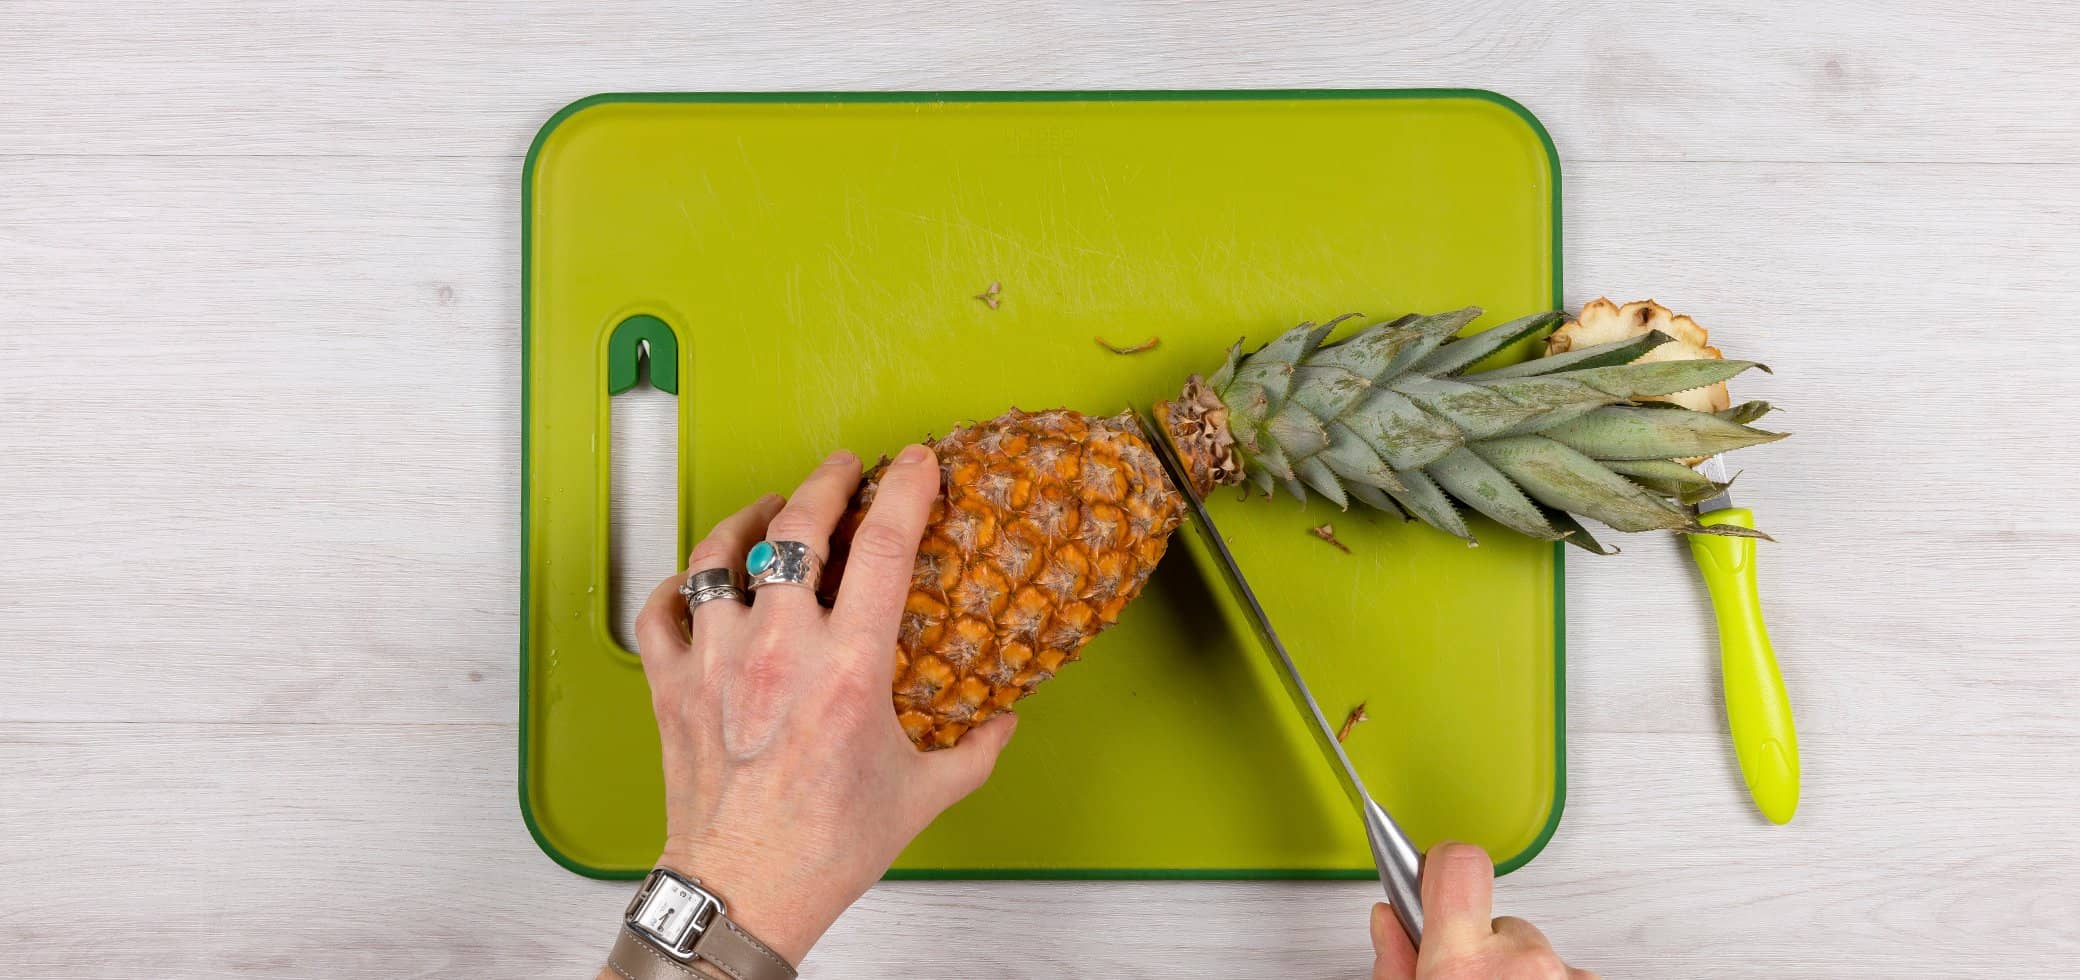 Coupe ananas : découper un ananas est si facile avec cet ustensile 